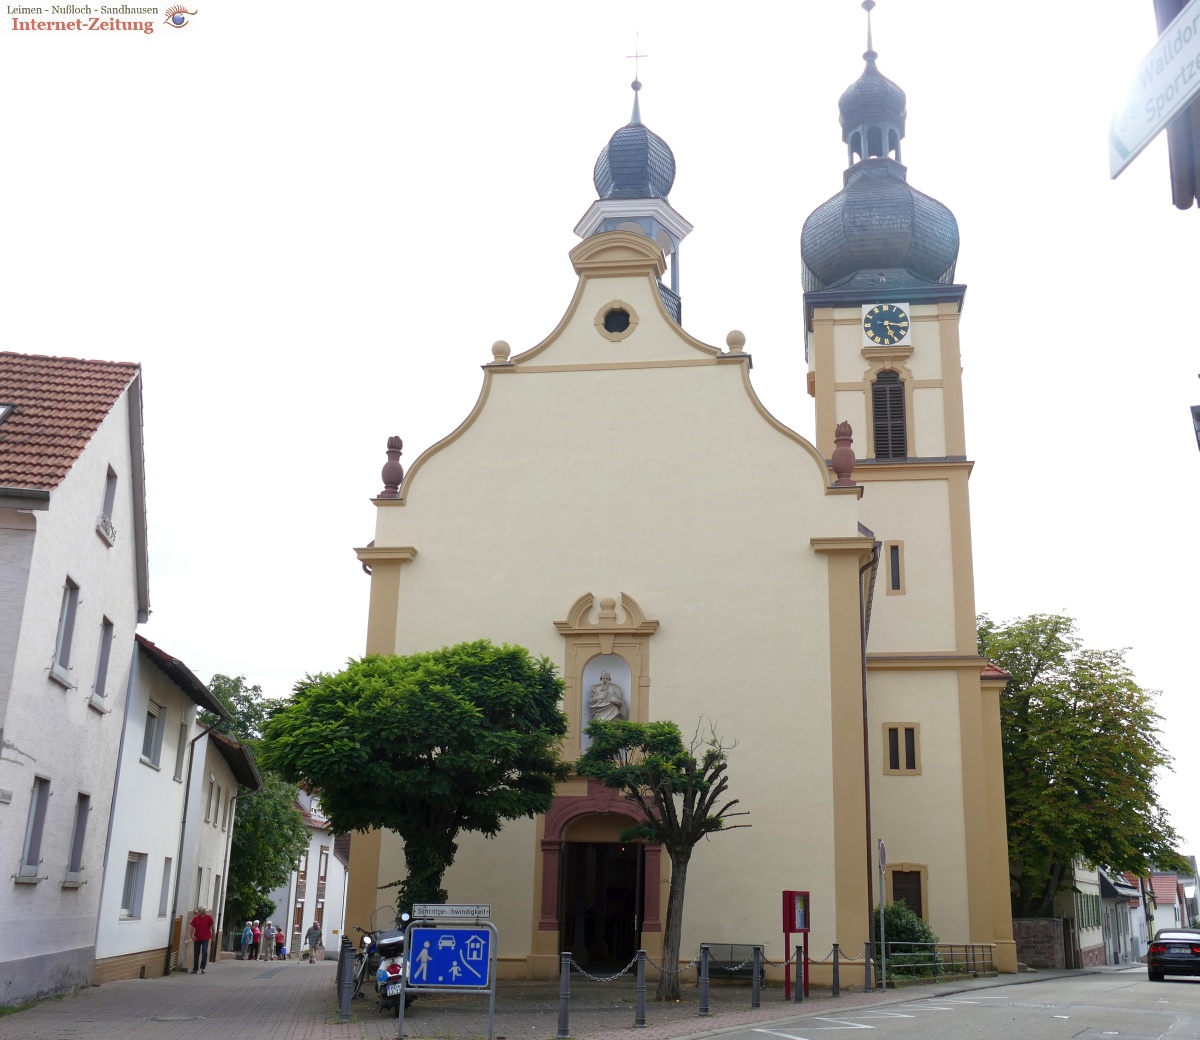 Vortrag "Von der Hauskirche zur Betonkirche" am Donnerstag